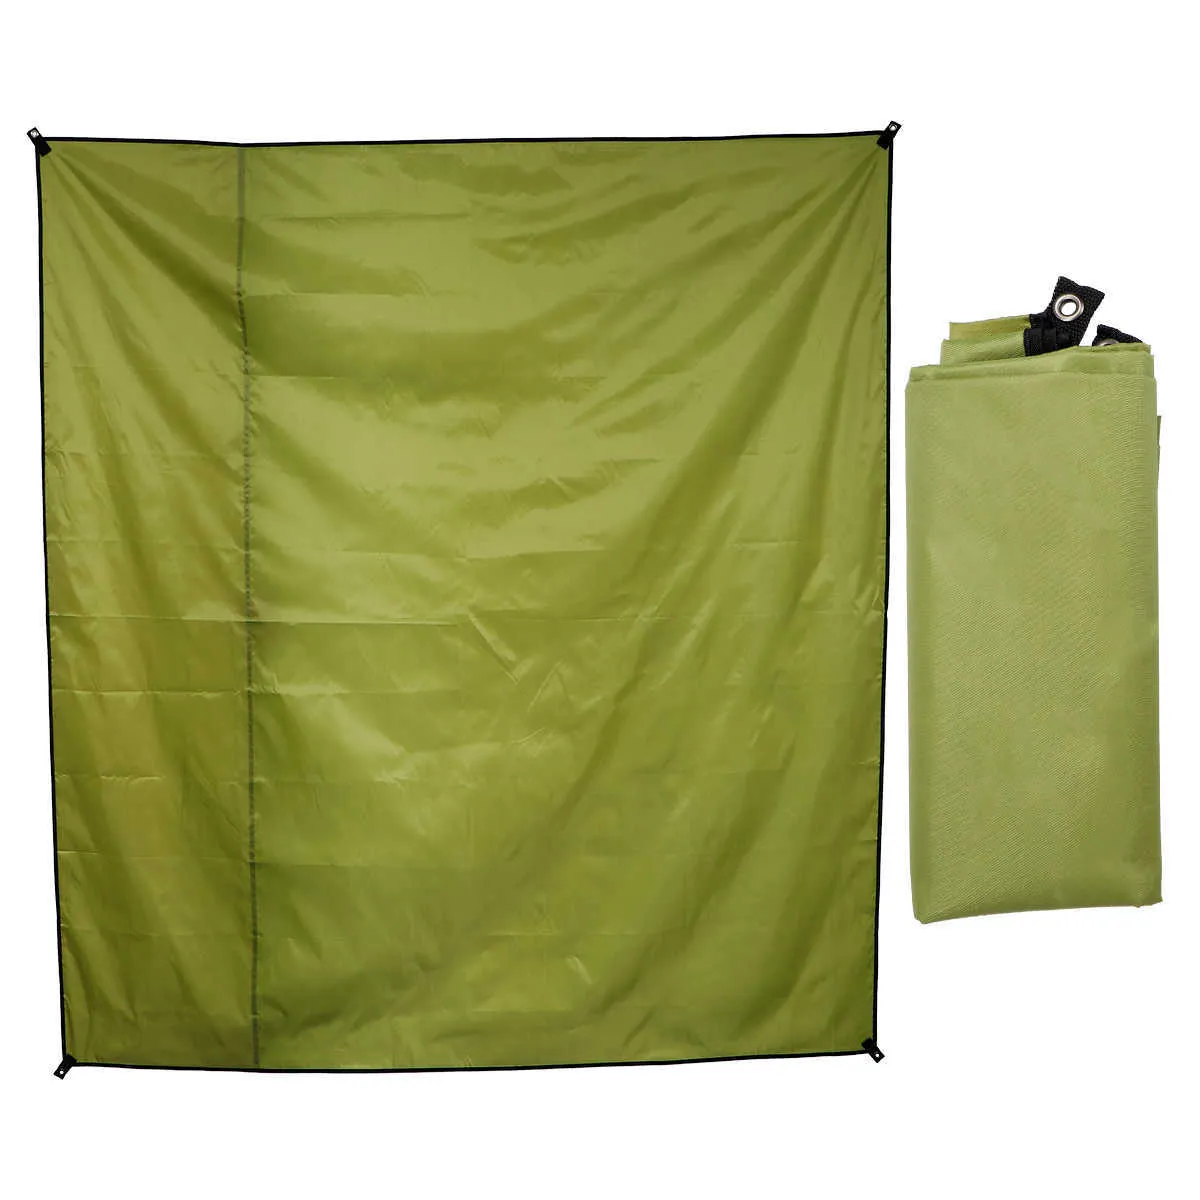 1 Pz 210x150 cm Tessuto Oxford Zerbino Tenda da campeggio a prova di umidità Tappetino impermeabile Coperta esterna portatile campeggio da spiaggia Prato Y0706